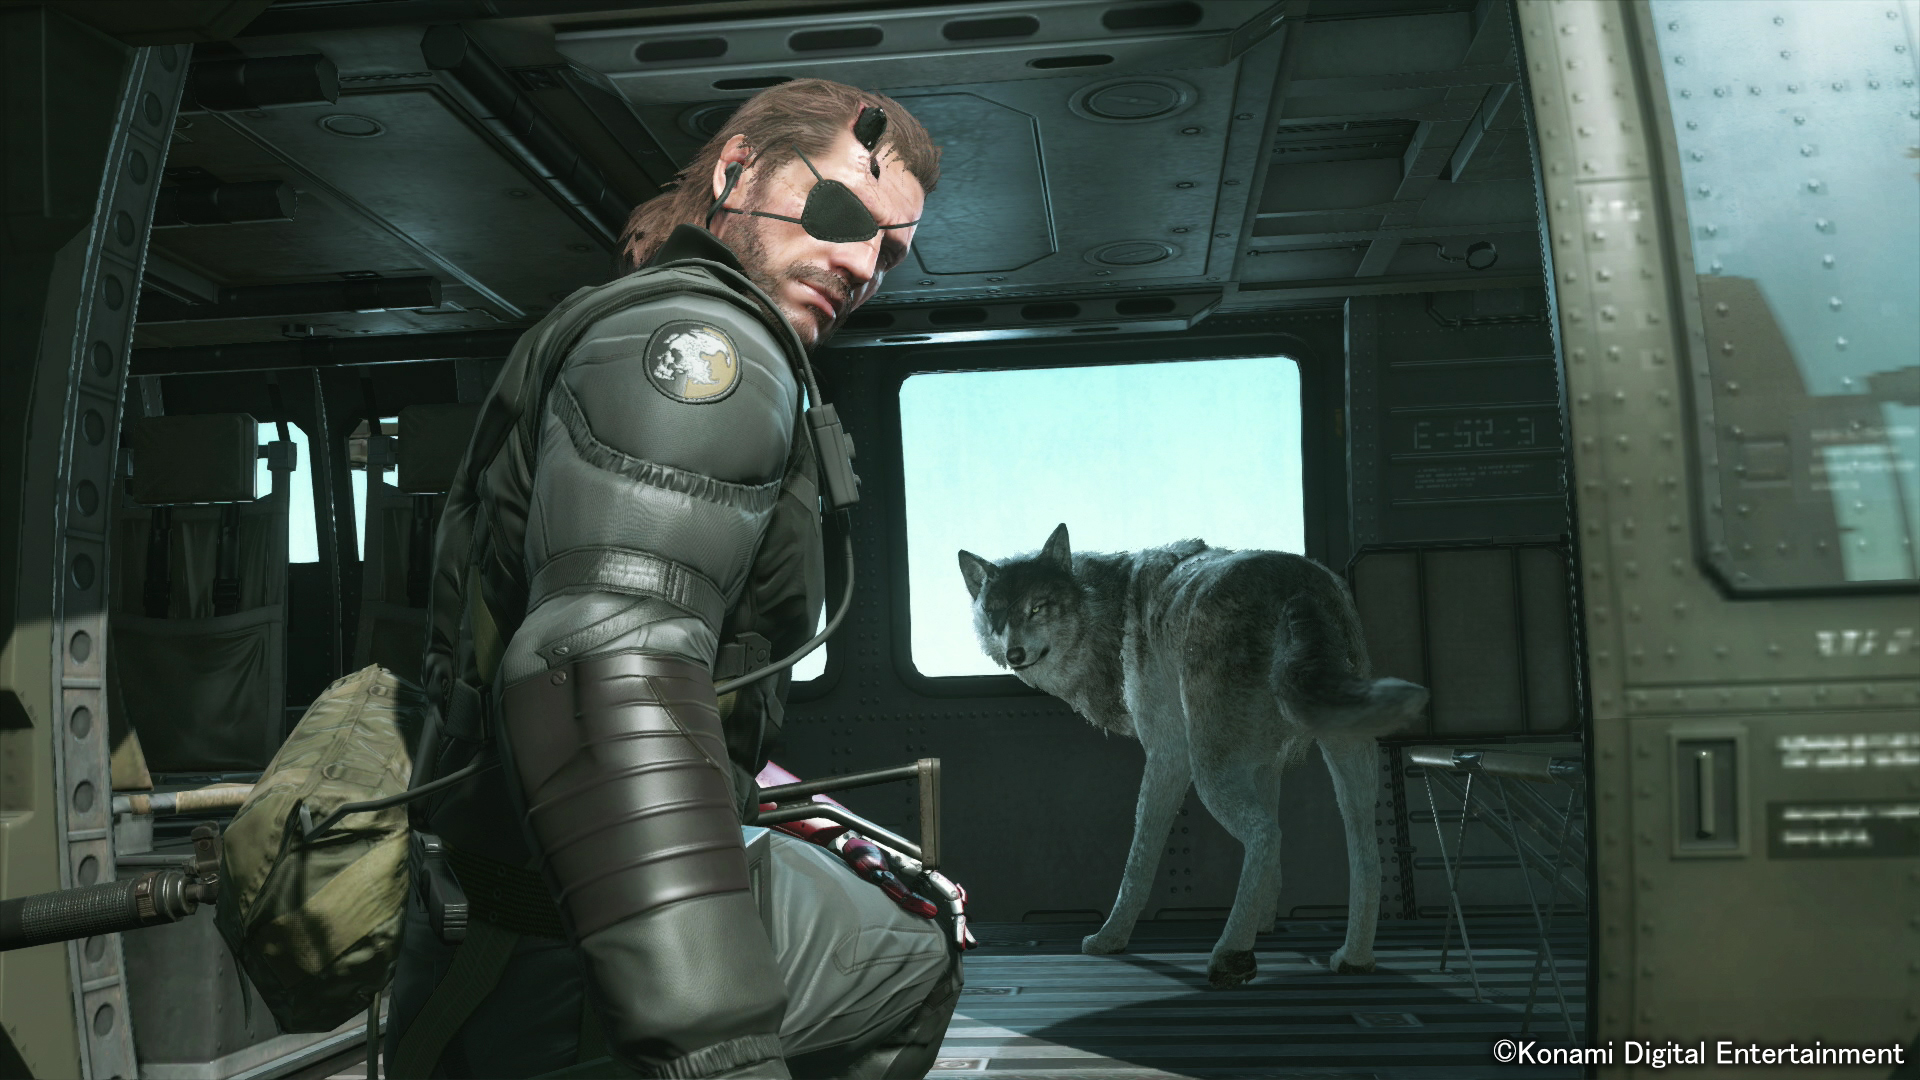 47+] Metal Gear Solid V: The Phantom Pain HD Wallpapers - Wallpaper ... -  WallpaperSafari